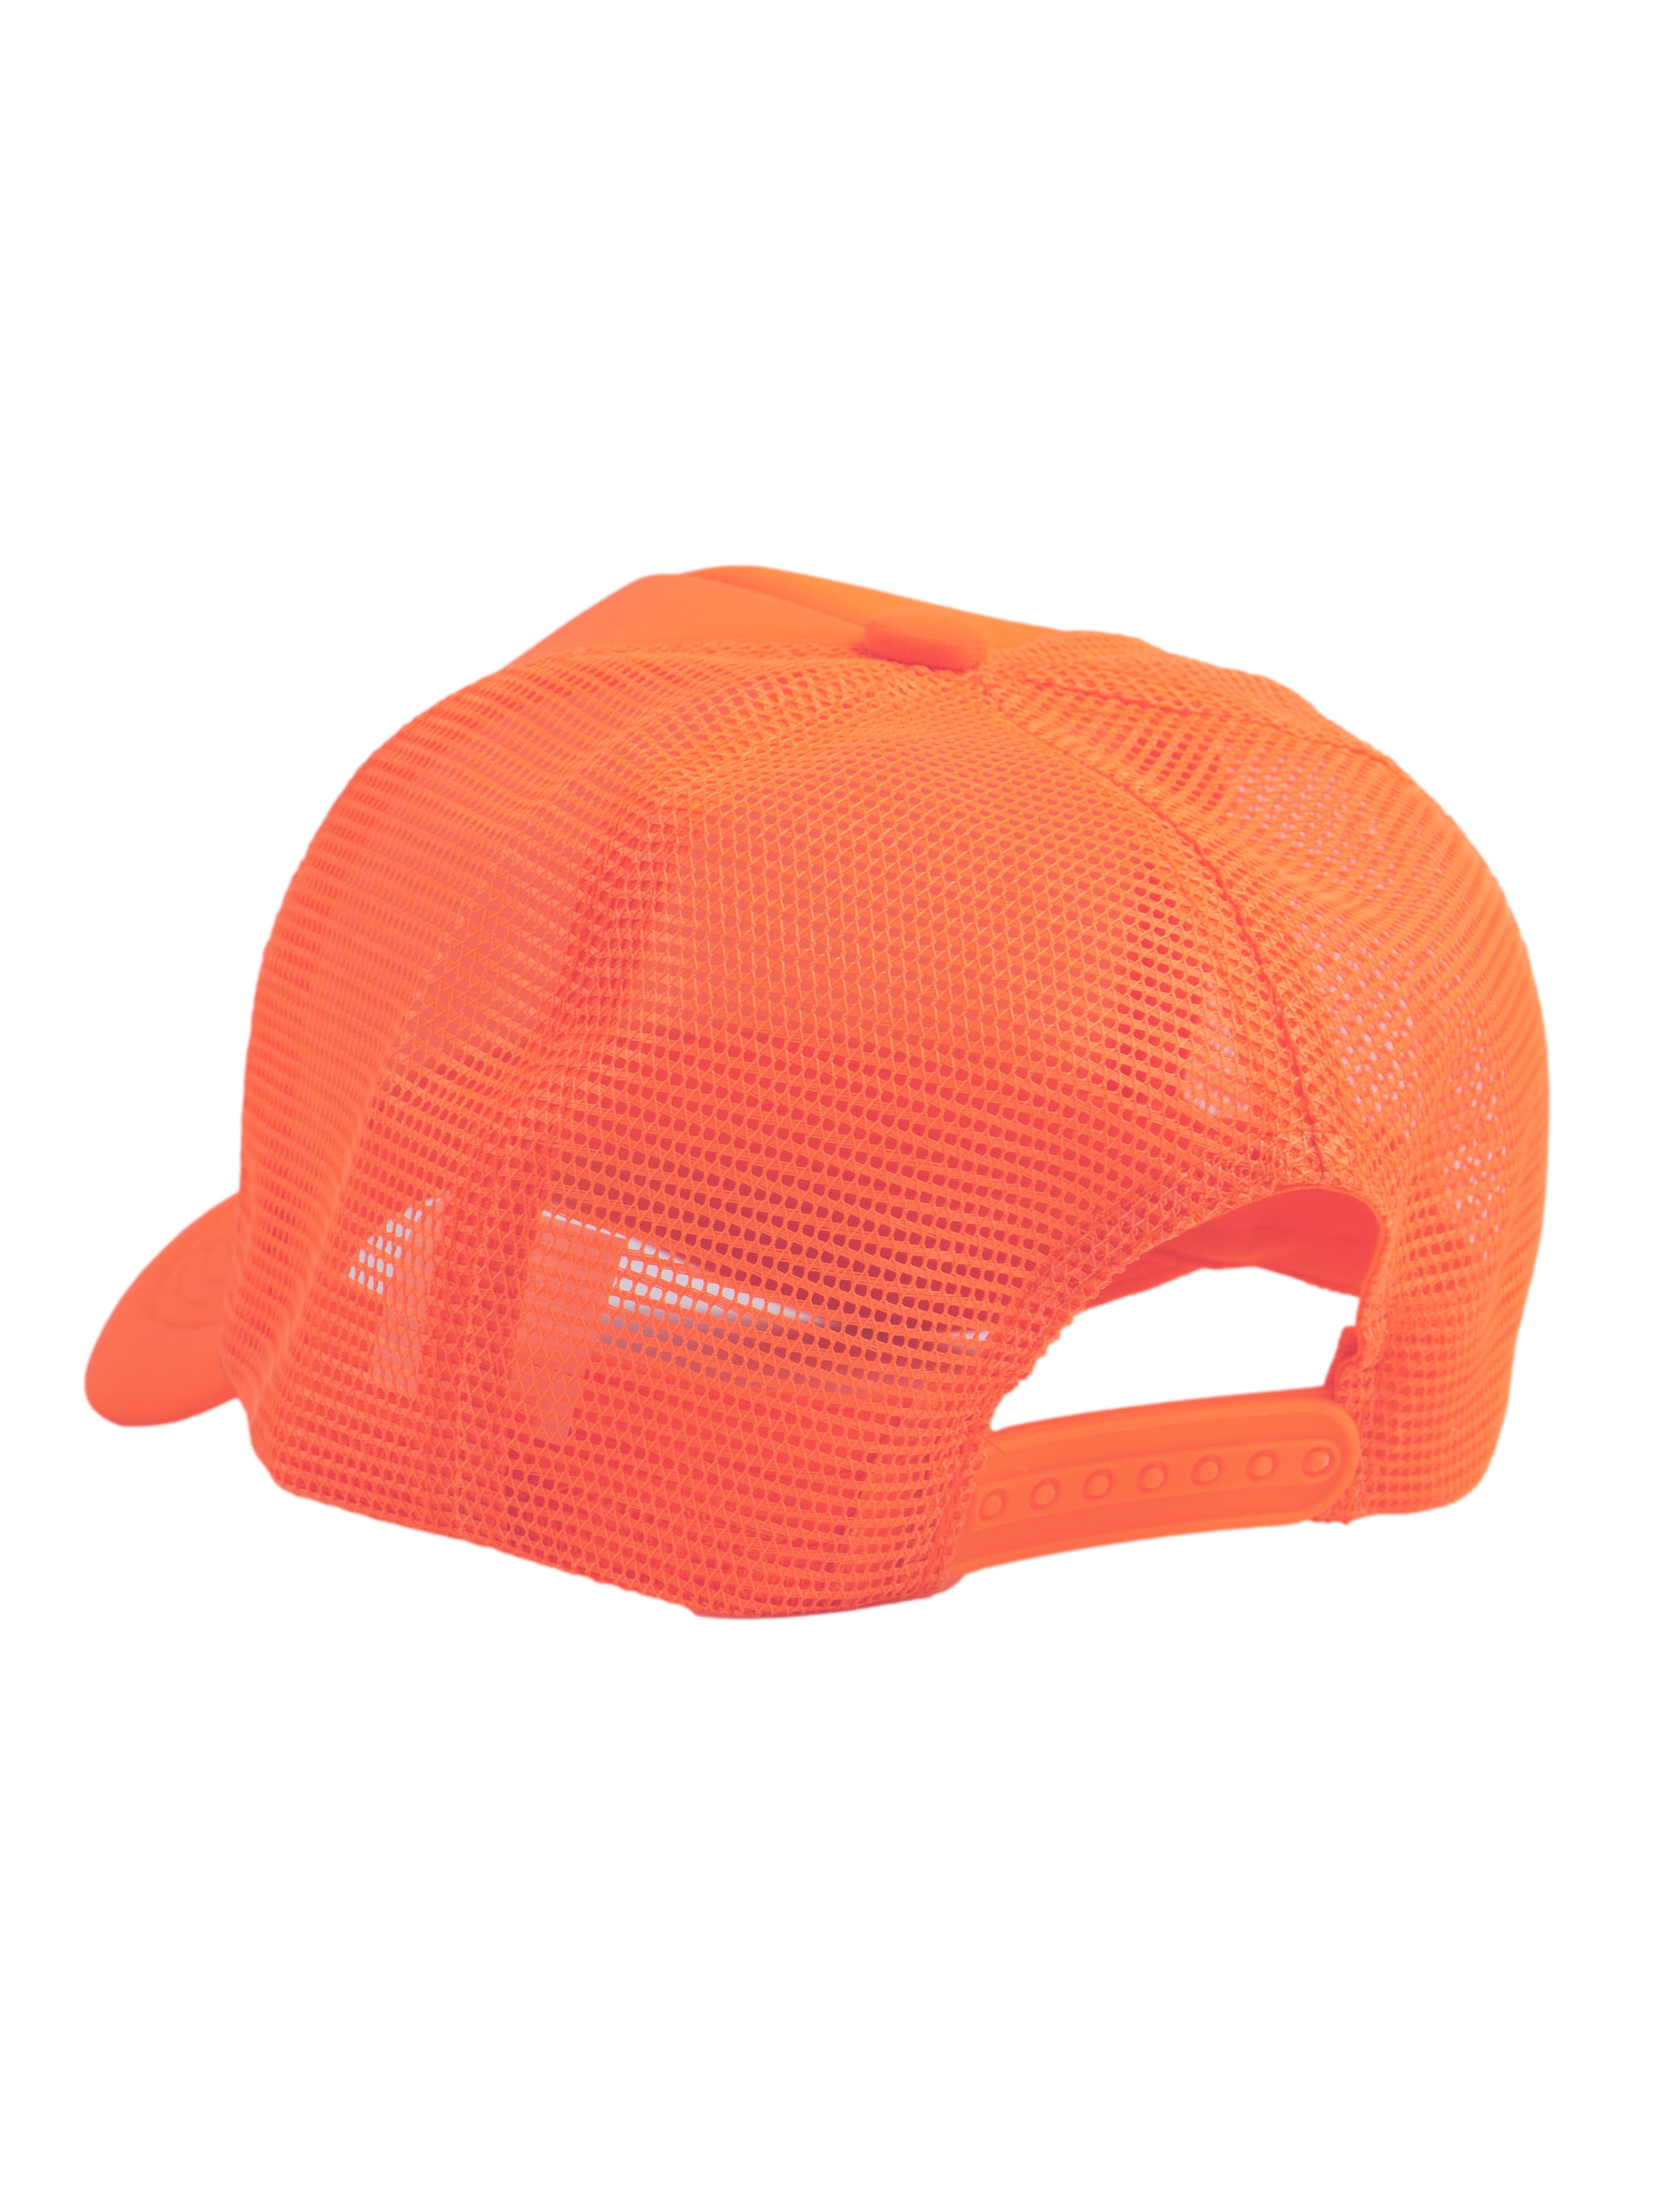 Top Headwear Blank Trucker Hat - Mens Trucker Hats Foam Mesh Snapback Neon  Orange